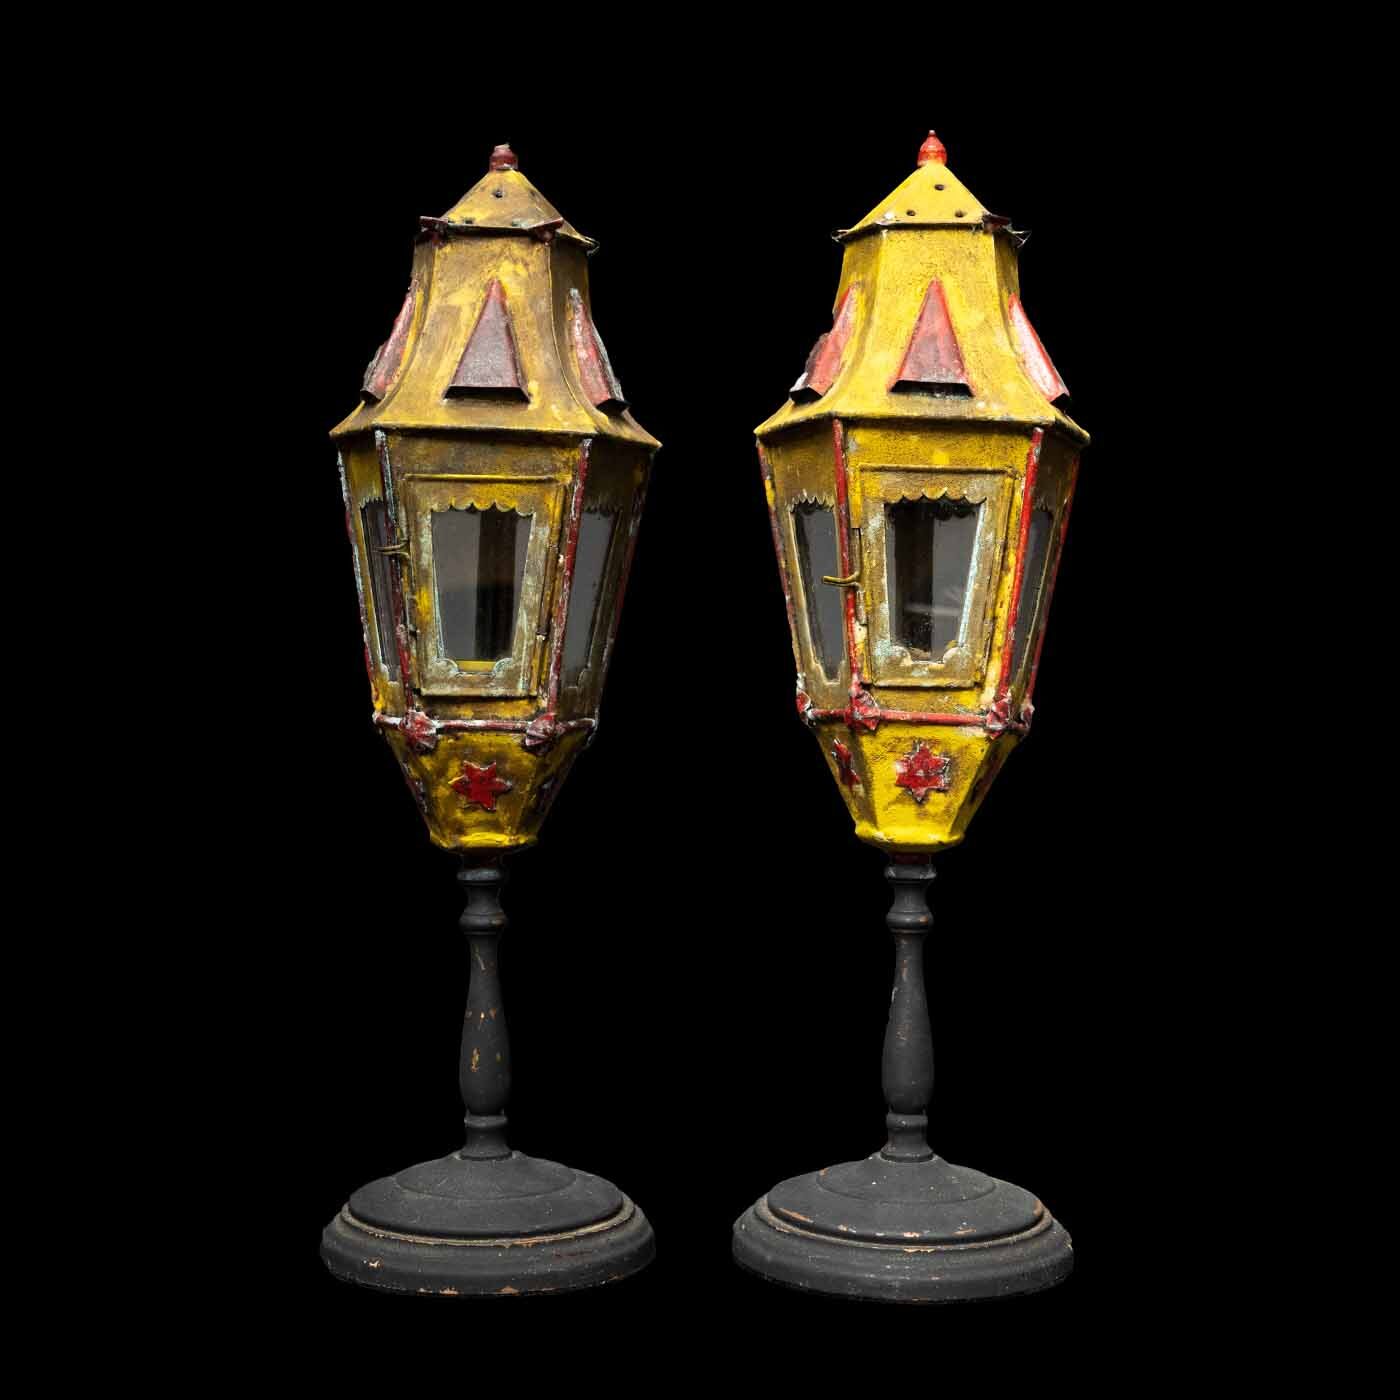 Pair of Venetian Pole Mounted Lanterns